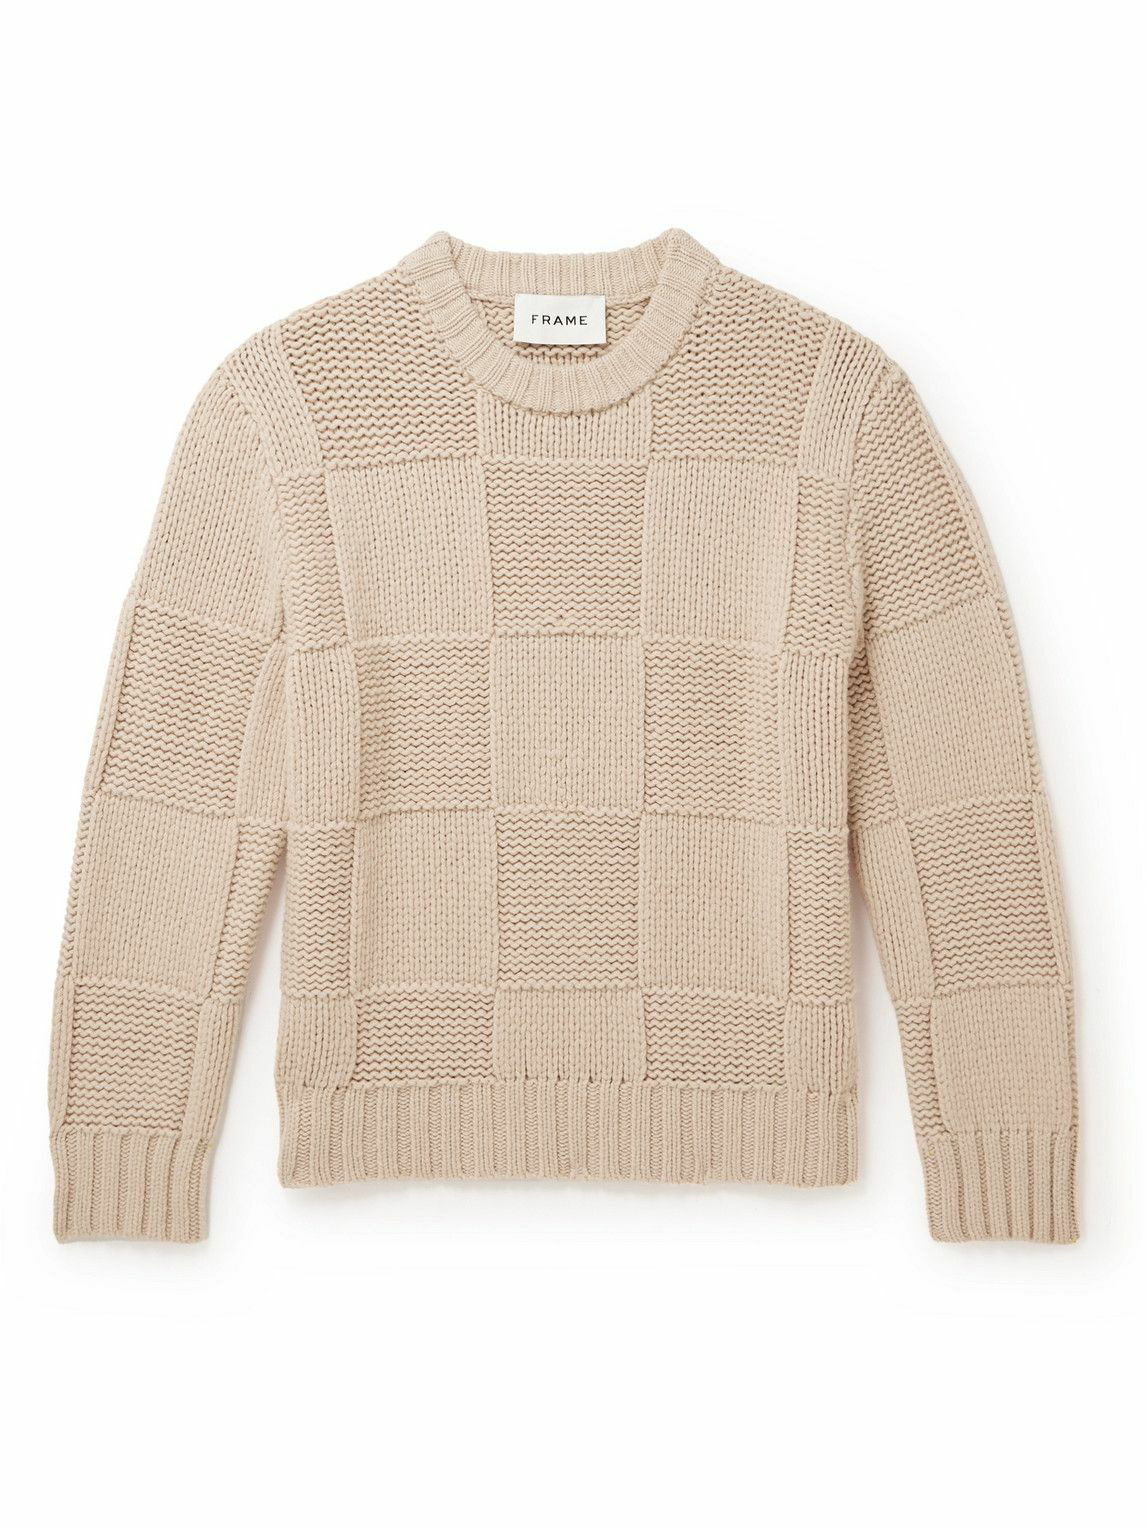 FRAME - Grid Merino Wool Sweater - Neutrals Frame Denim